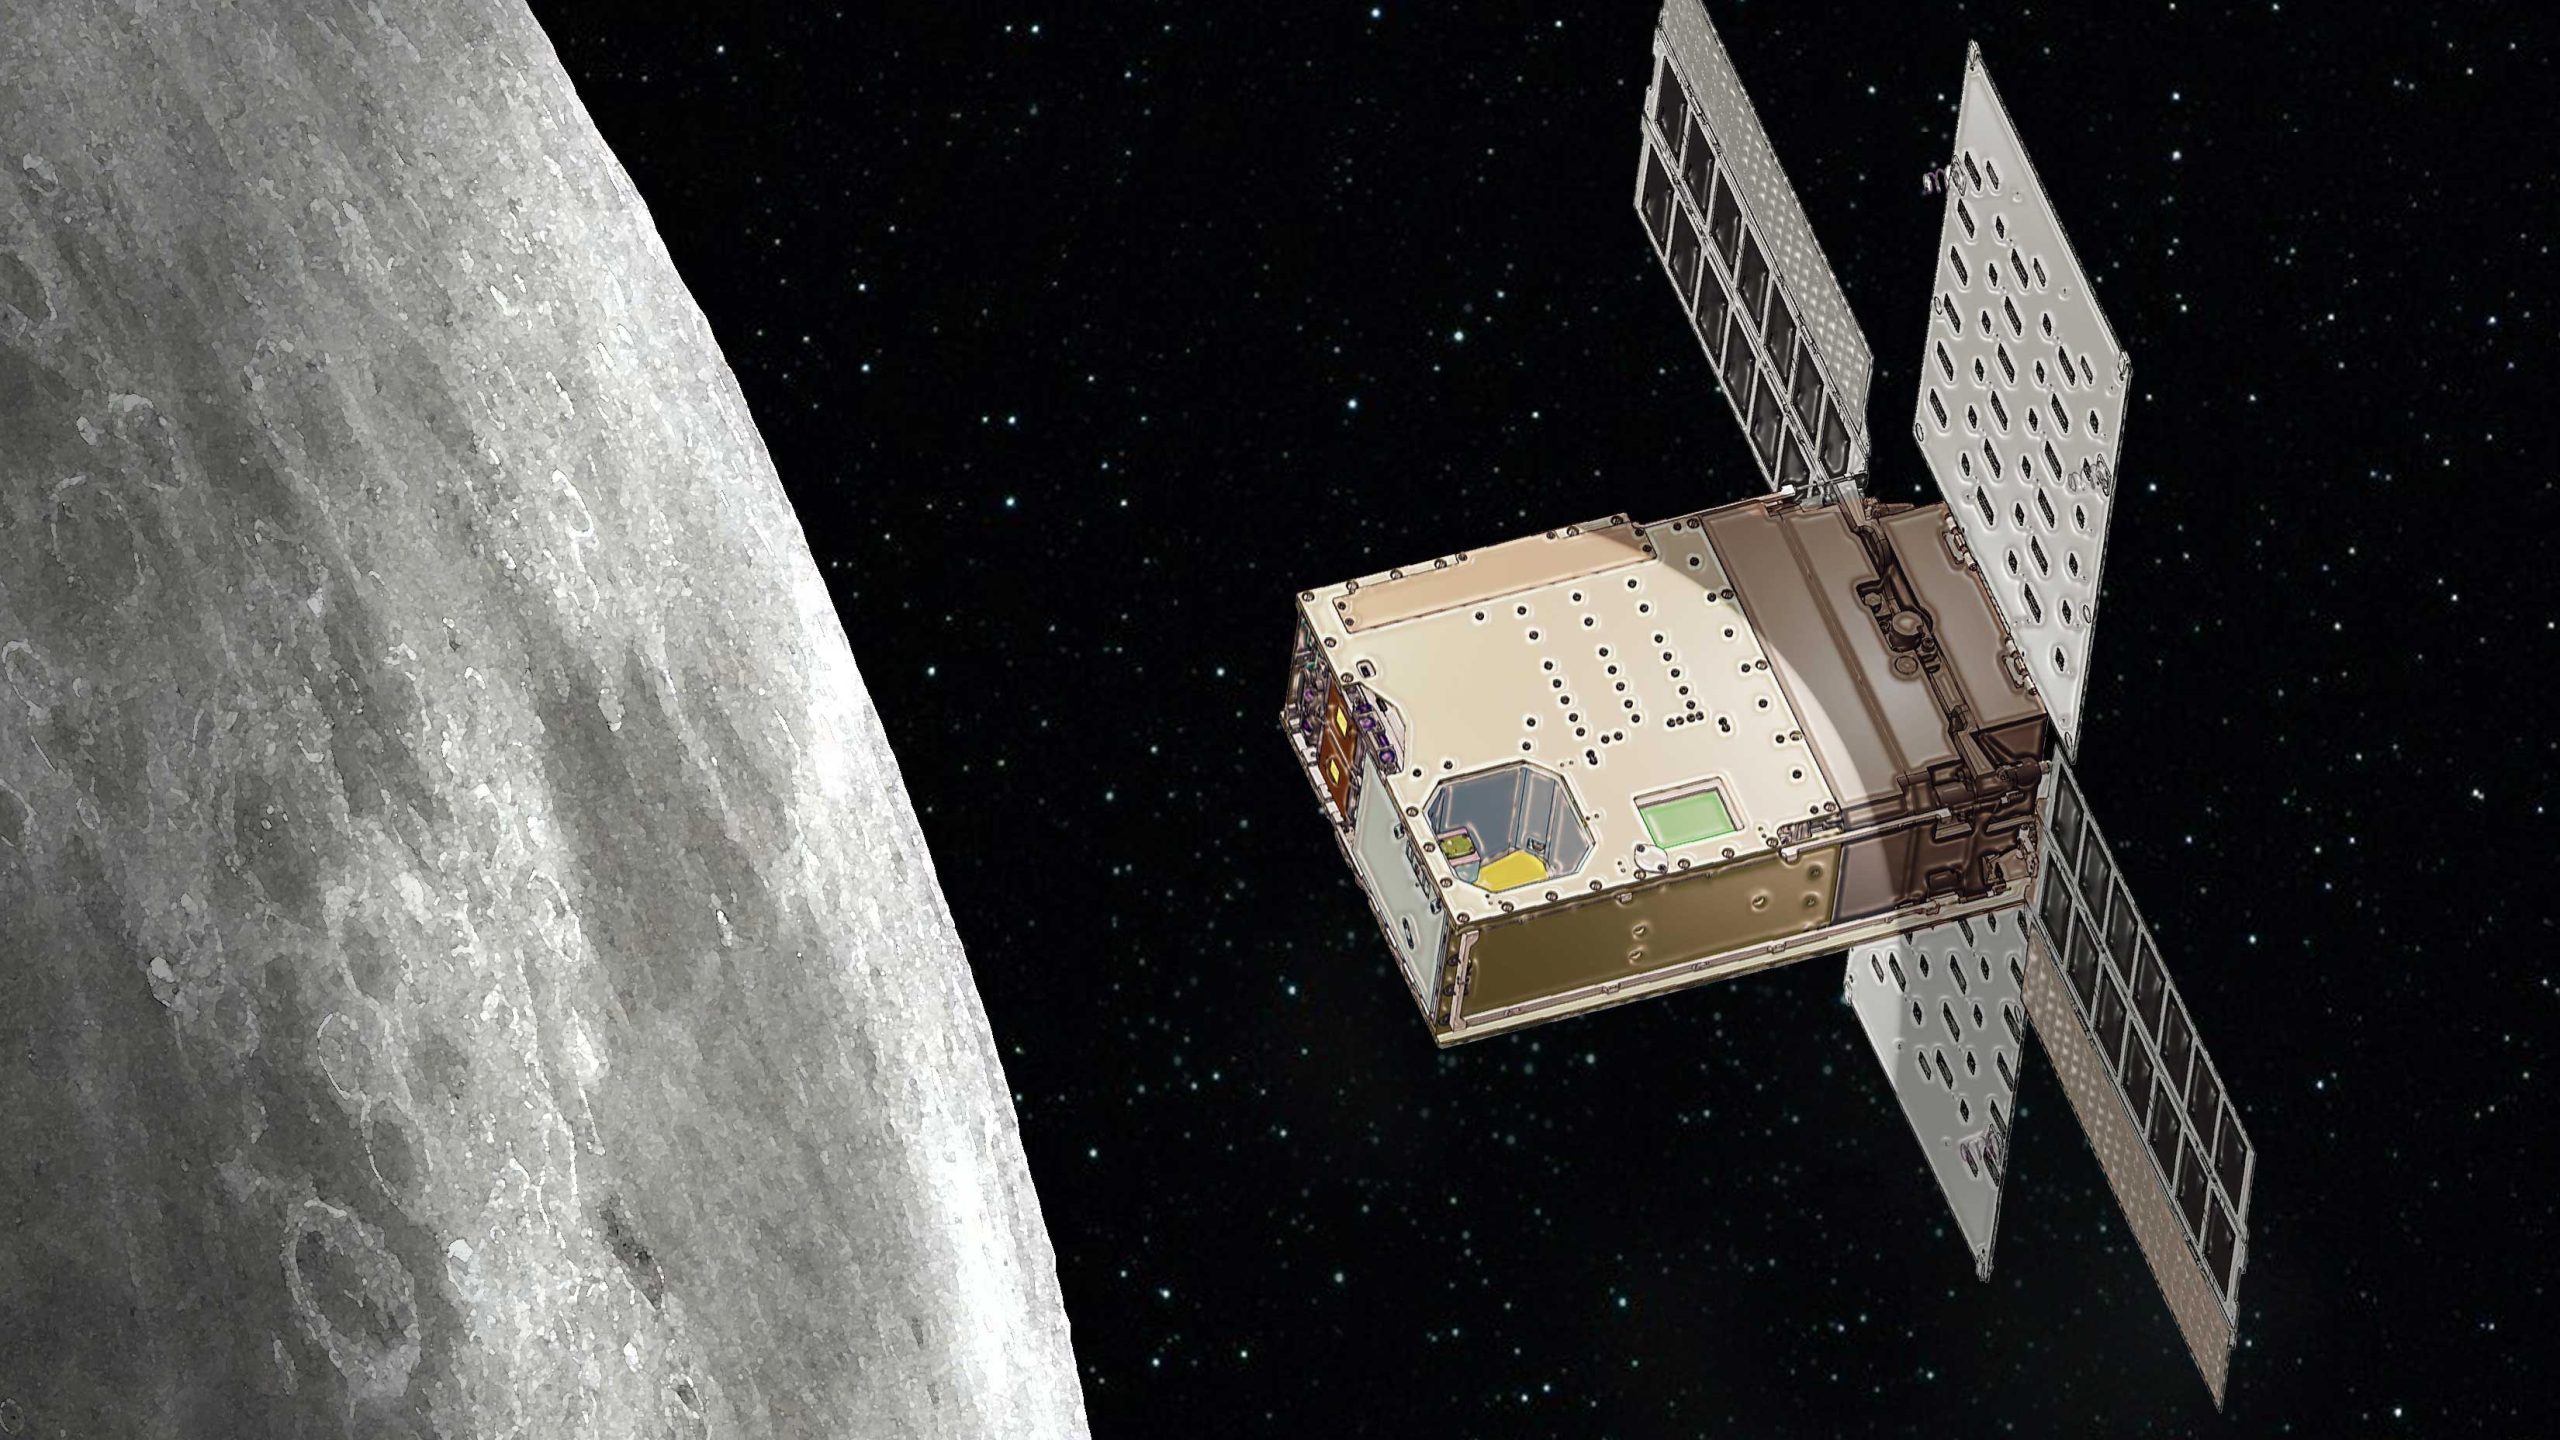 La torcia lunare della NASA è stata accesa - Segui la missione sulla luna in tempo reale